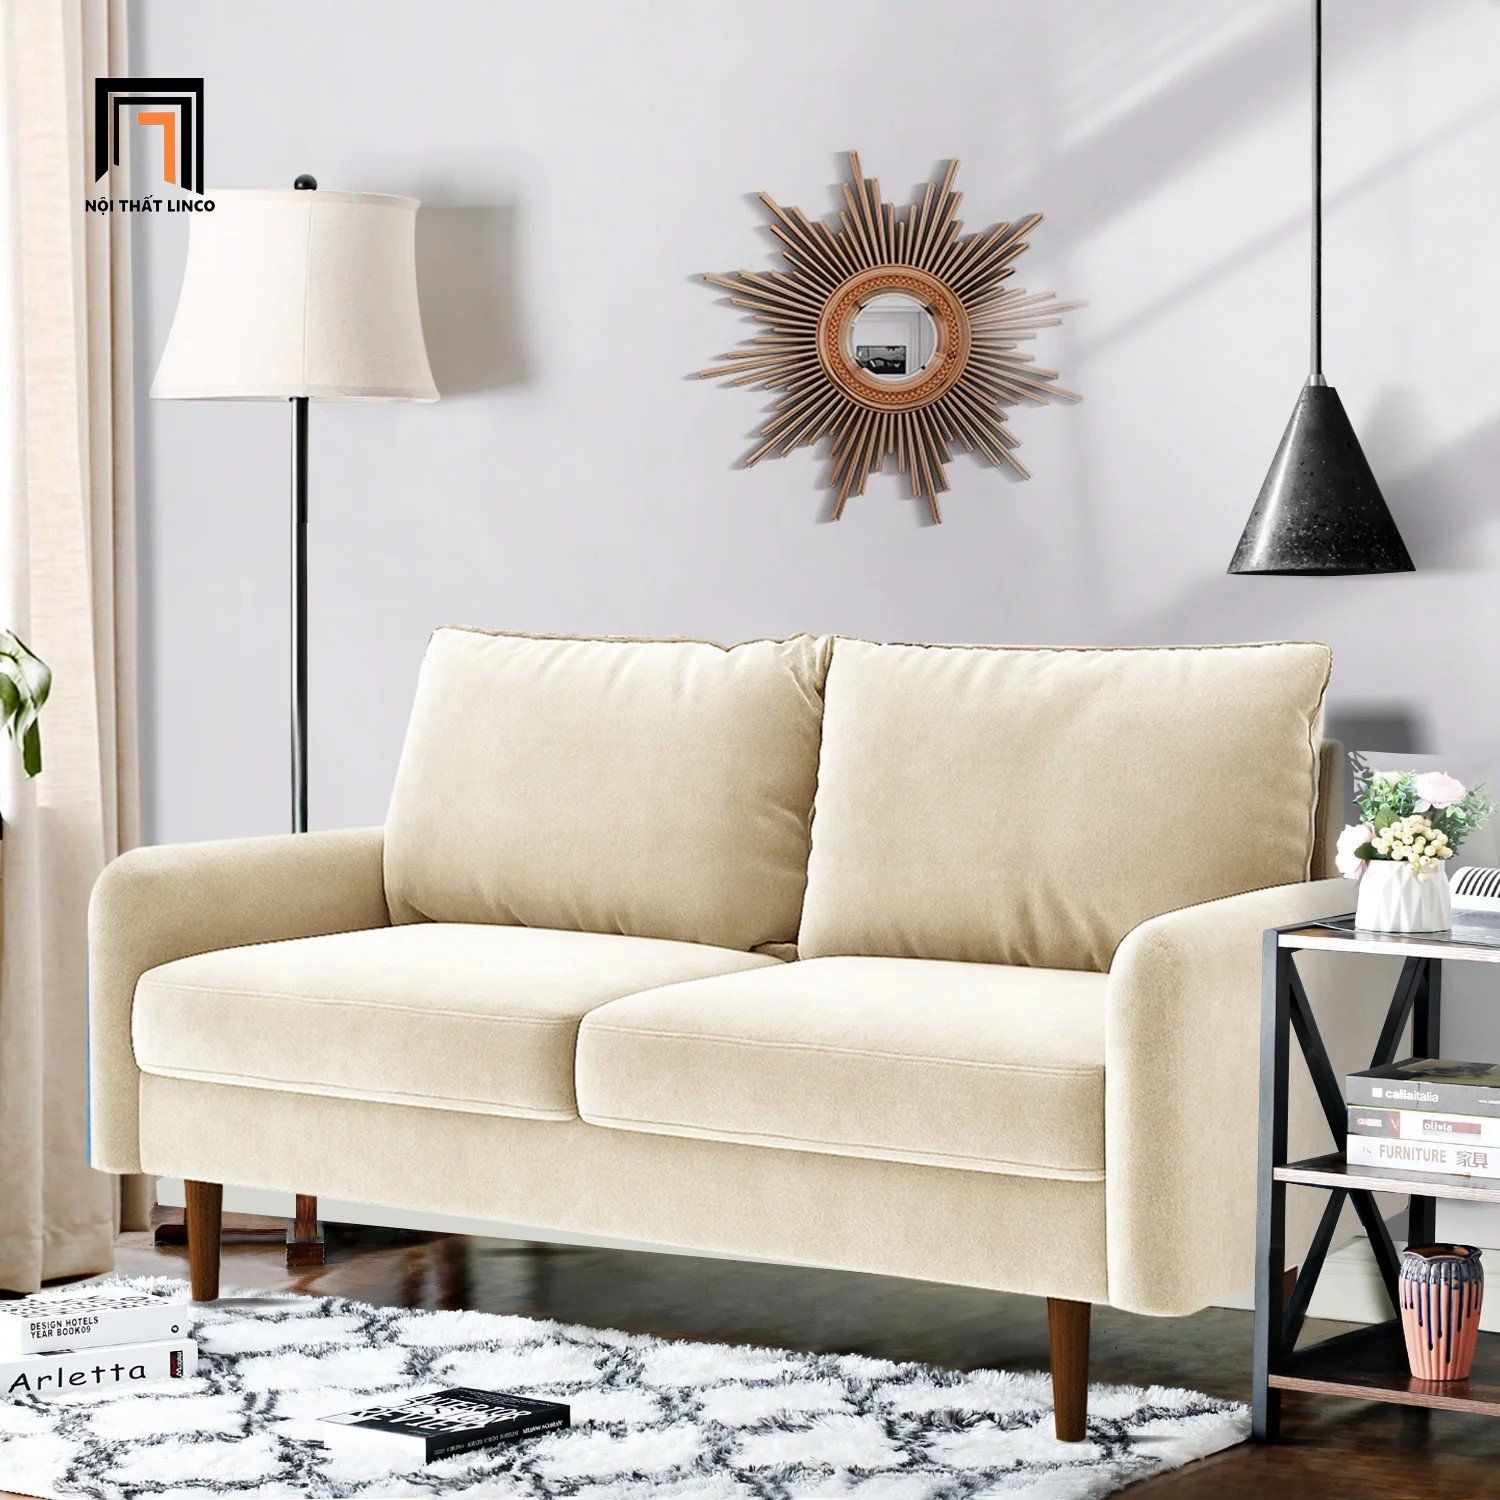  Ghế sofa băng nhỏ gọn BT203 Hessvilla dài 1m5 màu trắng kem 